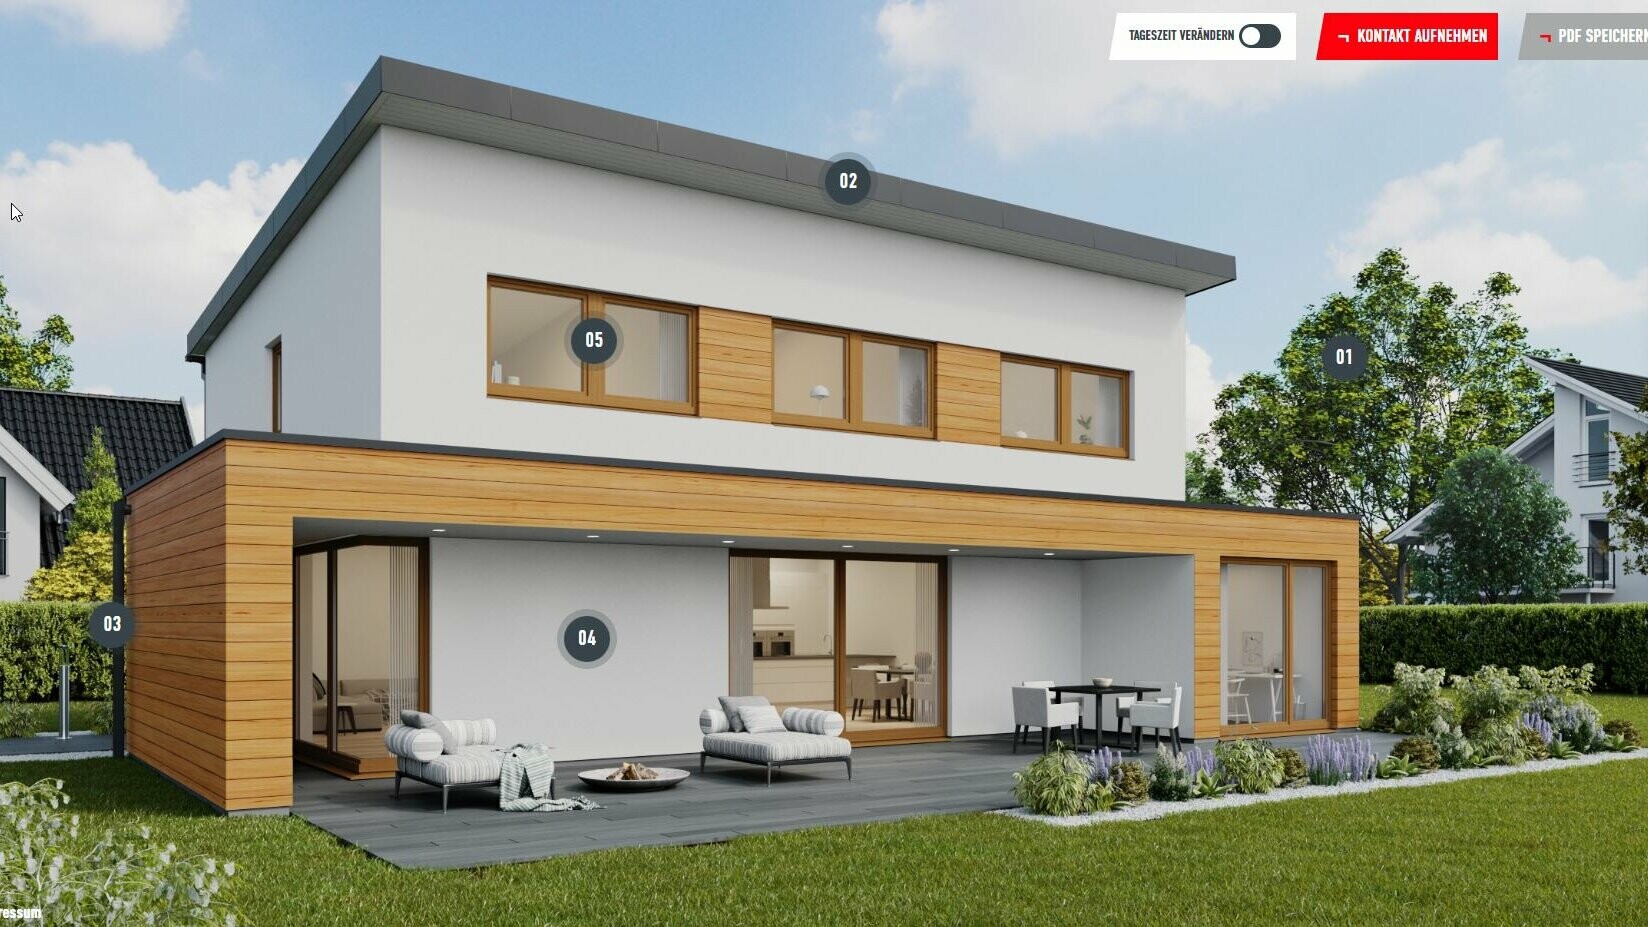 Esempio di configurazione di una casa unifamiliare con tetto a falda unica nel colore P.10 nero con elementi di legno sulla facciata. L’abitazione si trova nell’area di insediamento di un sobborgo.